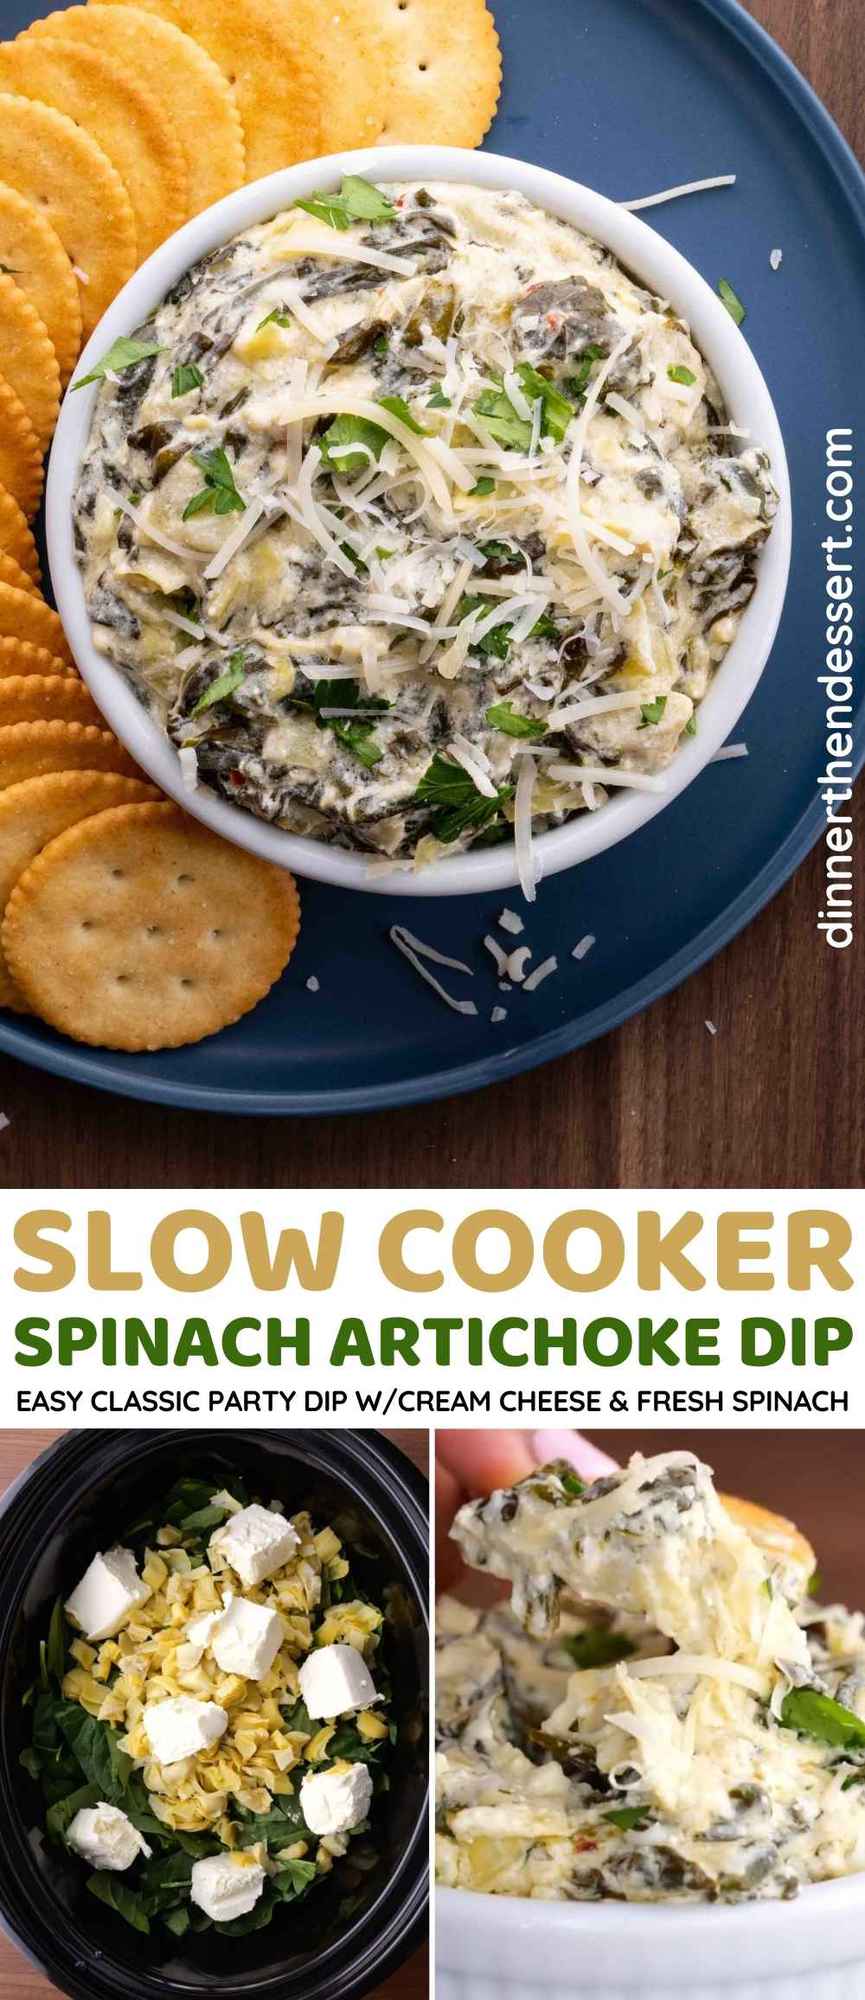 https://dinnerthendessert.com/wp-content/uploads/2017/04/Slow-Cooker-Spinach-Artichoke-Dip-L.jpg